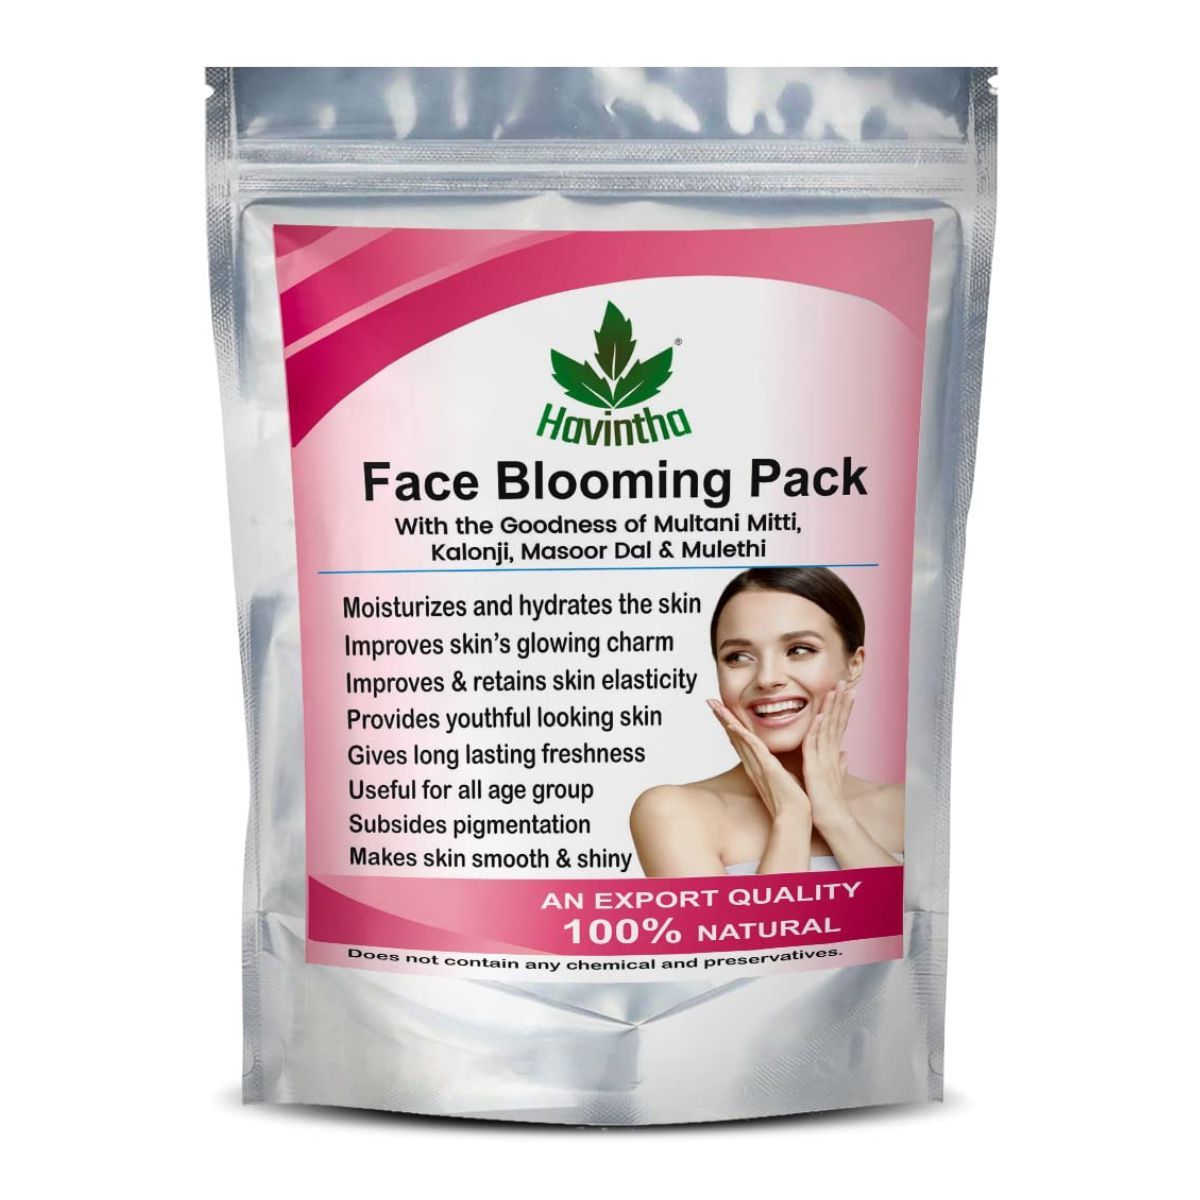 Buy Blooming Face Pack - Kalonji Seed, Masoor Dal, Mulethi, Multani Mitti Powder (227 g) - Purplle